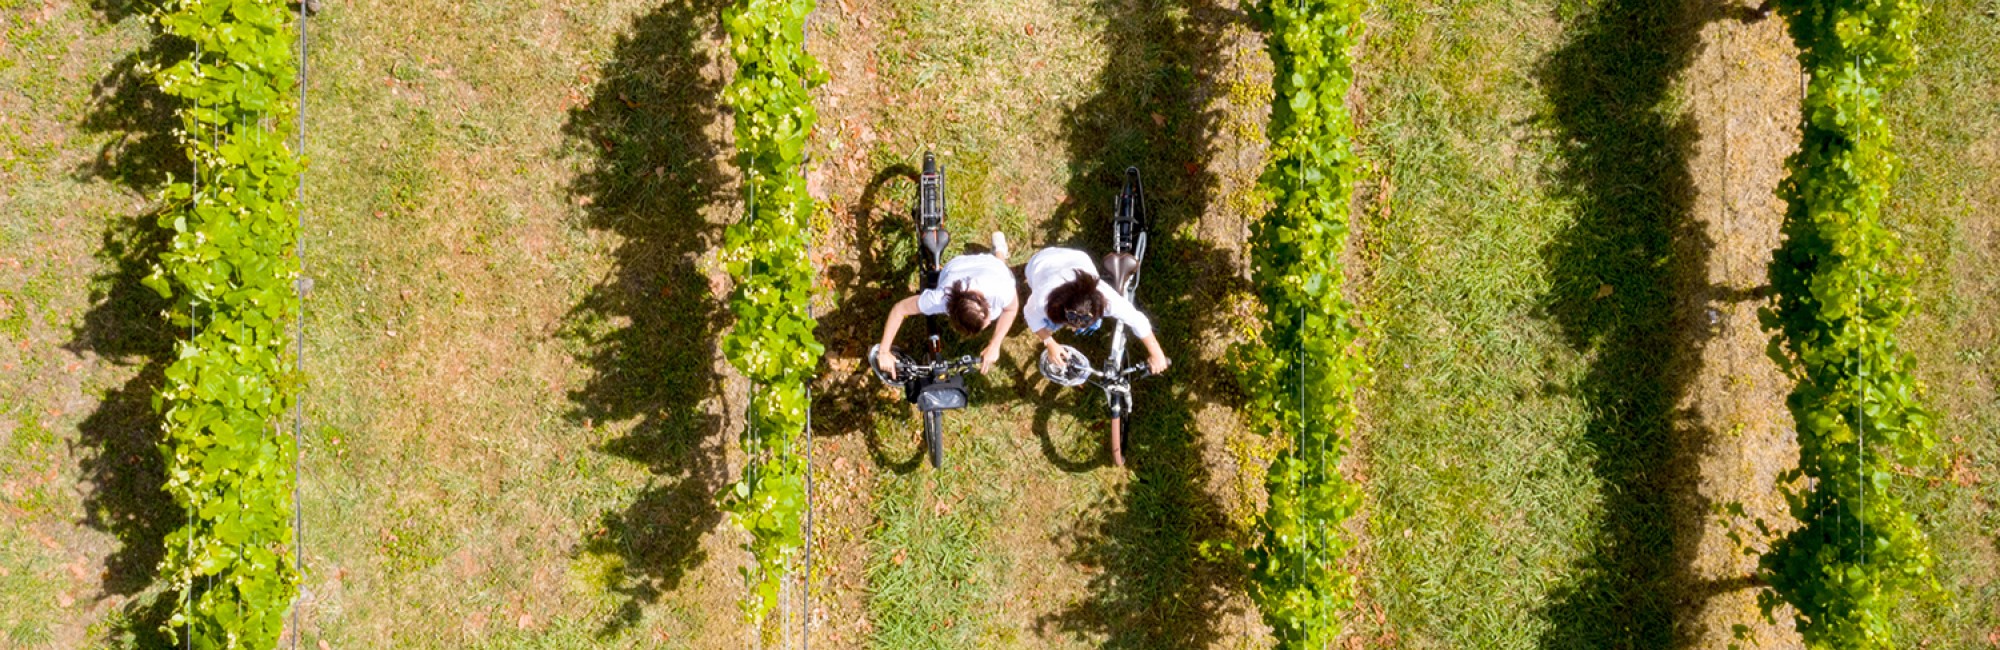 Hawkes Bay Trail vines droneshot